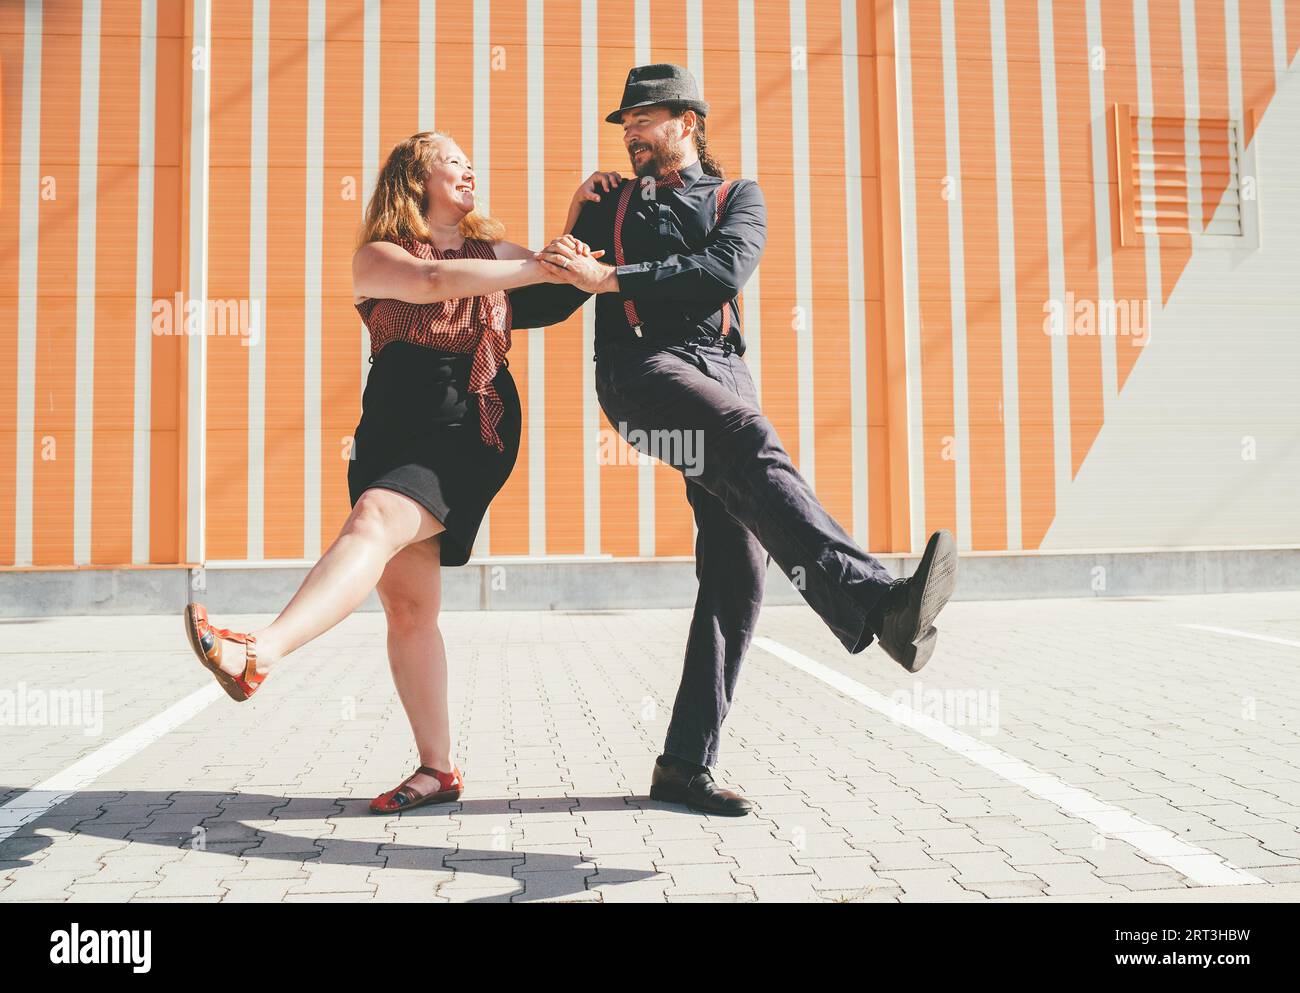 Couple joyeux dansant une danse rétro swing à la musique jazz qui était très populaire pendant l'ère West Coast Swing dans les années 1920-40 Ils sourient à chaque autre Banque D'Images